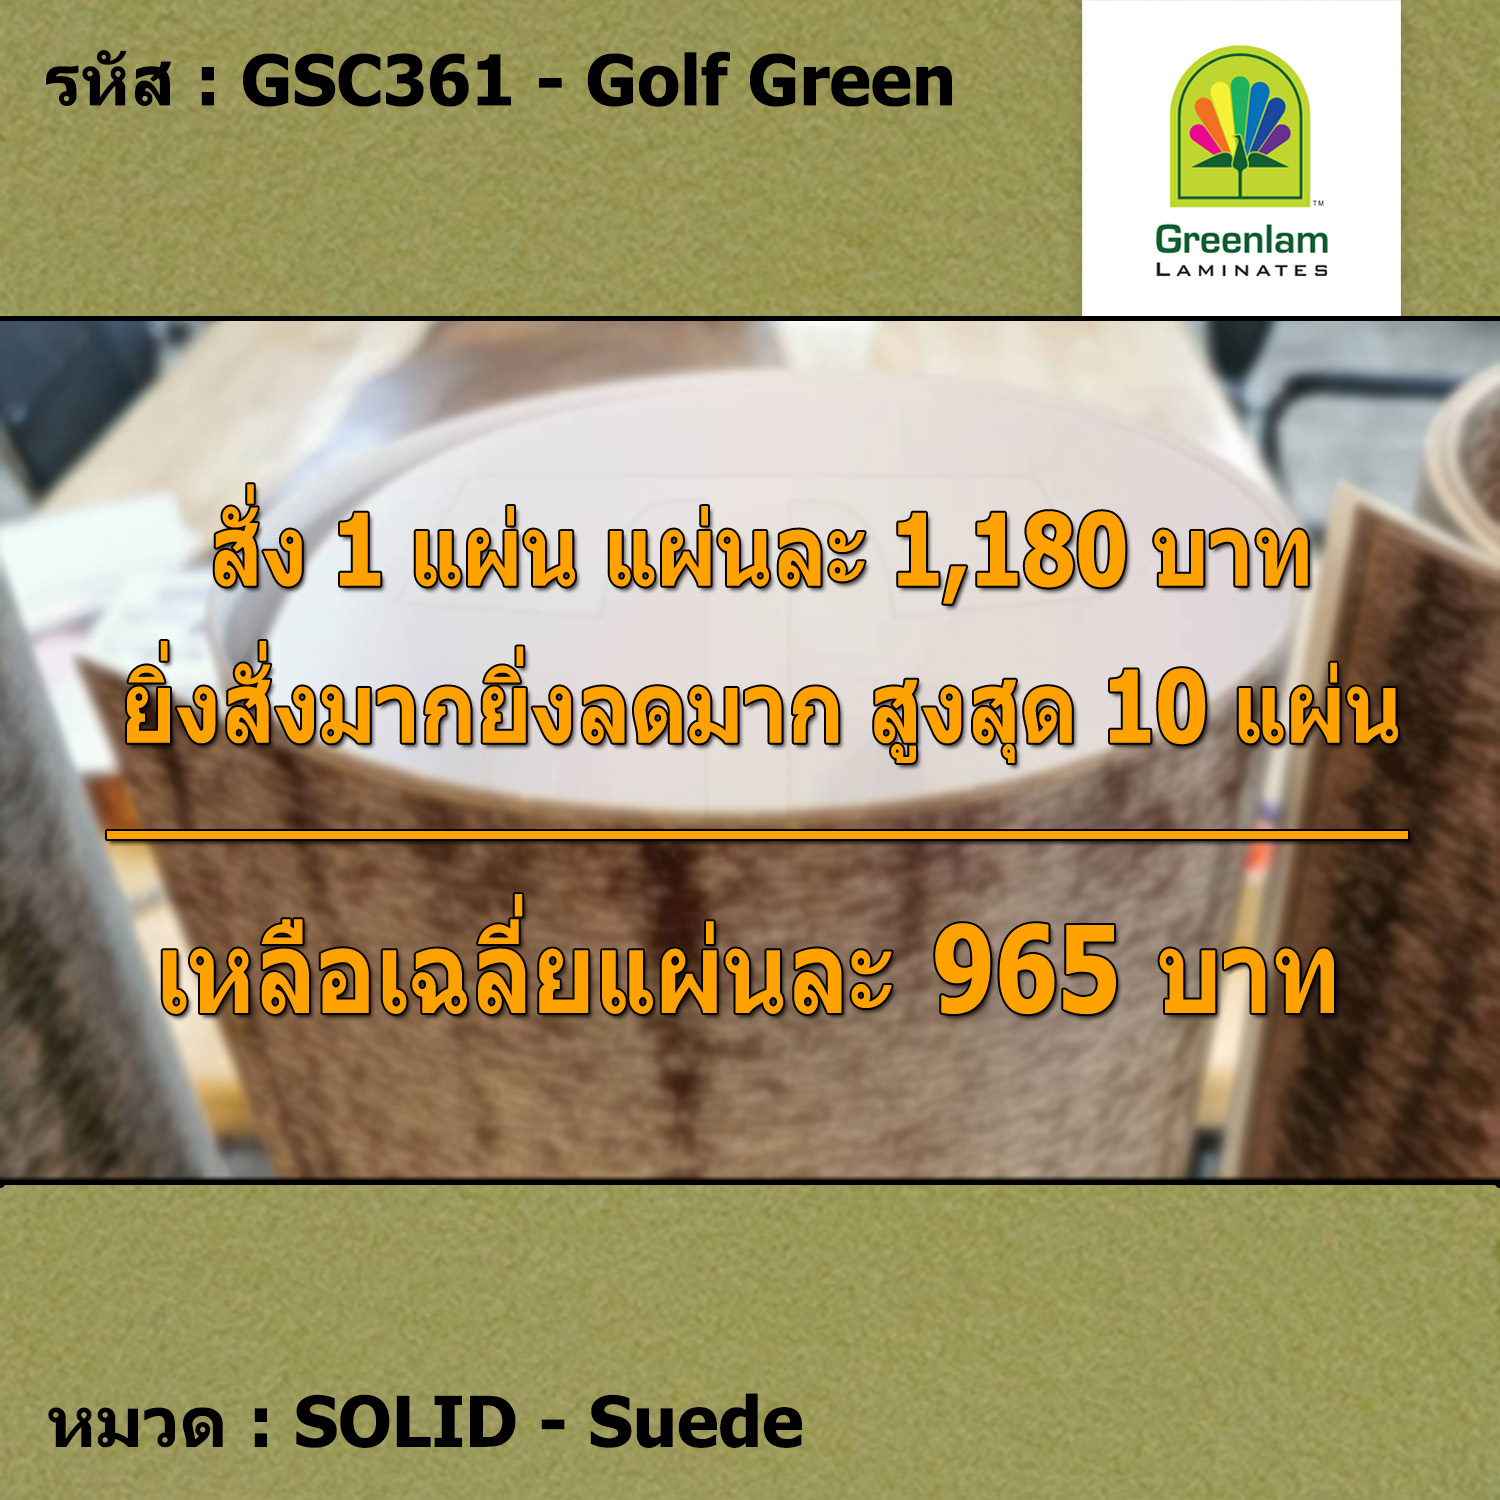 แผ่นโฟเมก้า แผ่นลามิเนต ยี่ห้อ Greenlam สีเขียว รหัส GSC361 Golf Green พื้นผิวลาย Suede ขนาด 1220 x 2440 มม. หนา 0.80 มม. ใช้สำหรับงานตกแต่งภายใน งานปิดผิวเฟอร์นิเจอร์ ผนัง และอื่นๆ เพื่อเพิ่มความสวยงาม formica laminate GSC361